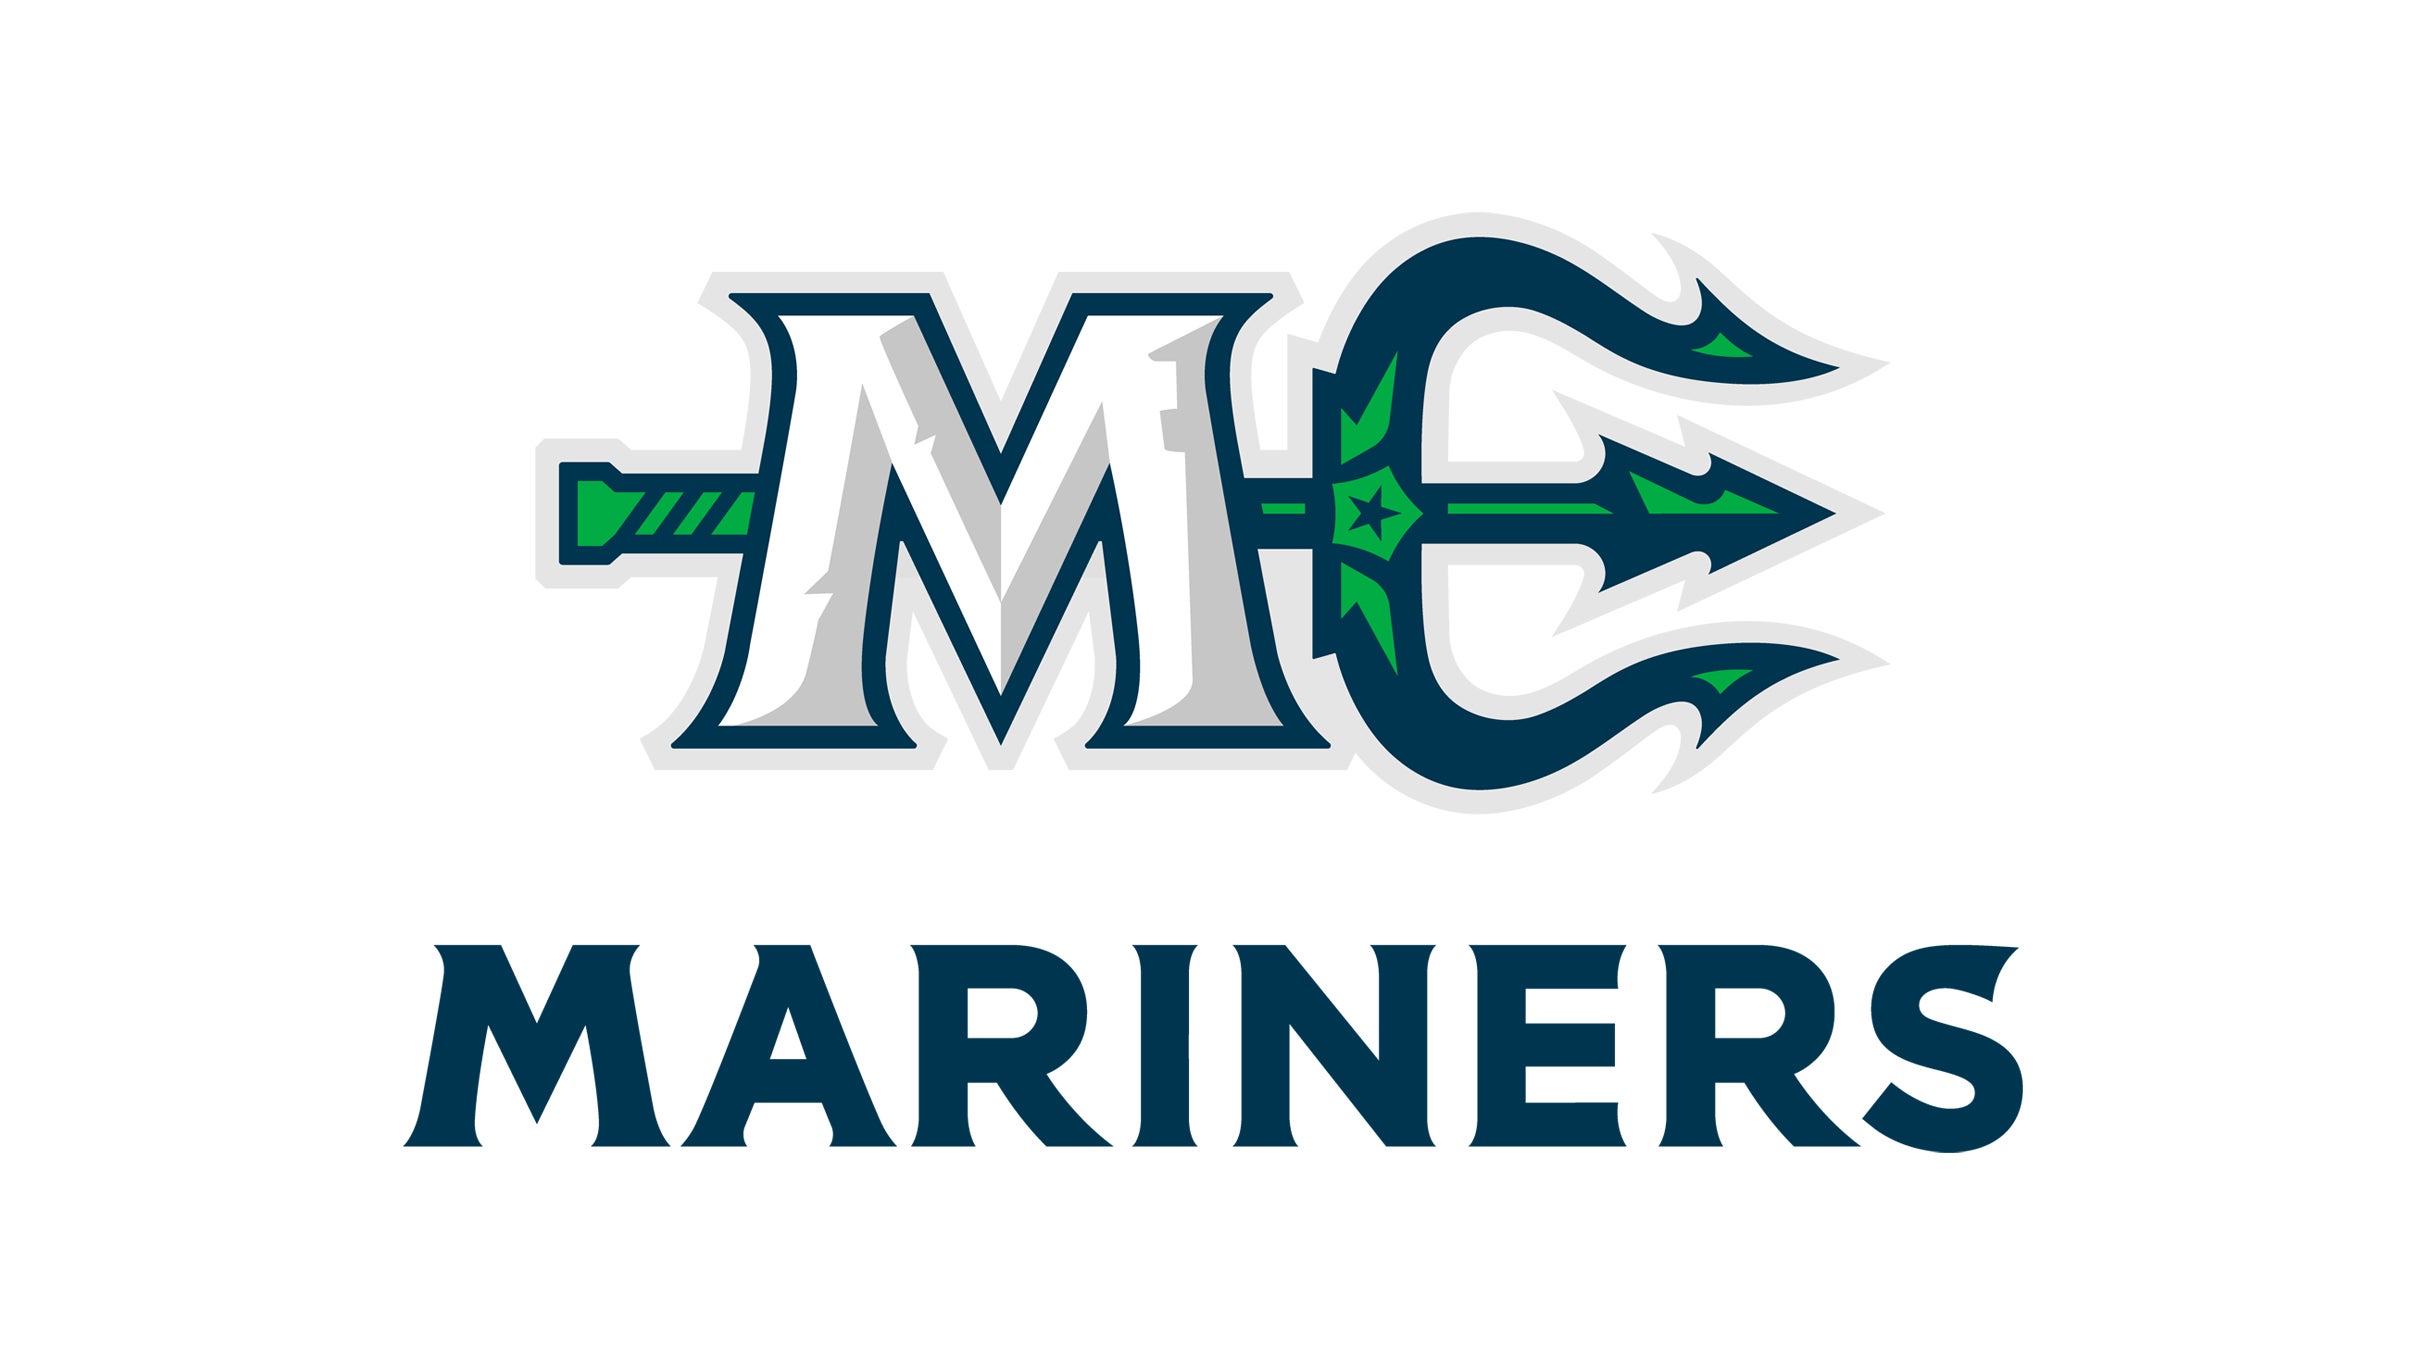 Maine Mariners Round 1 Game 4 at Cross Insurance Arena